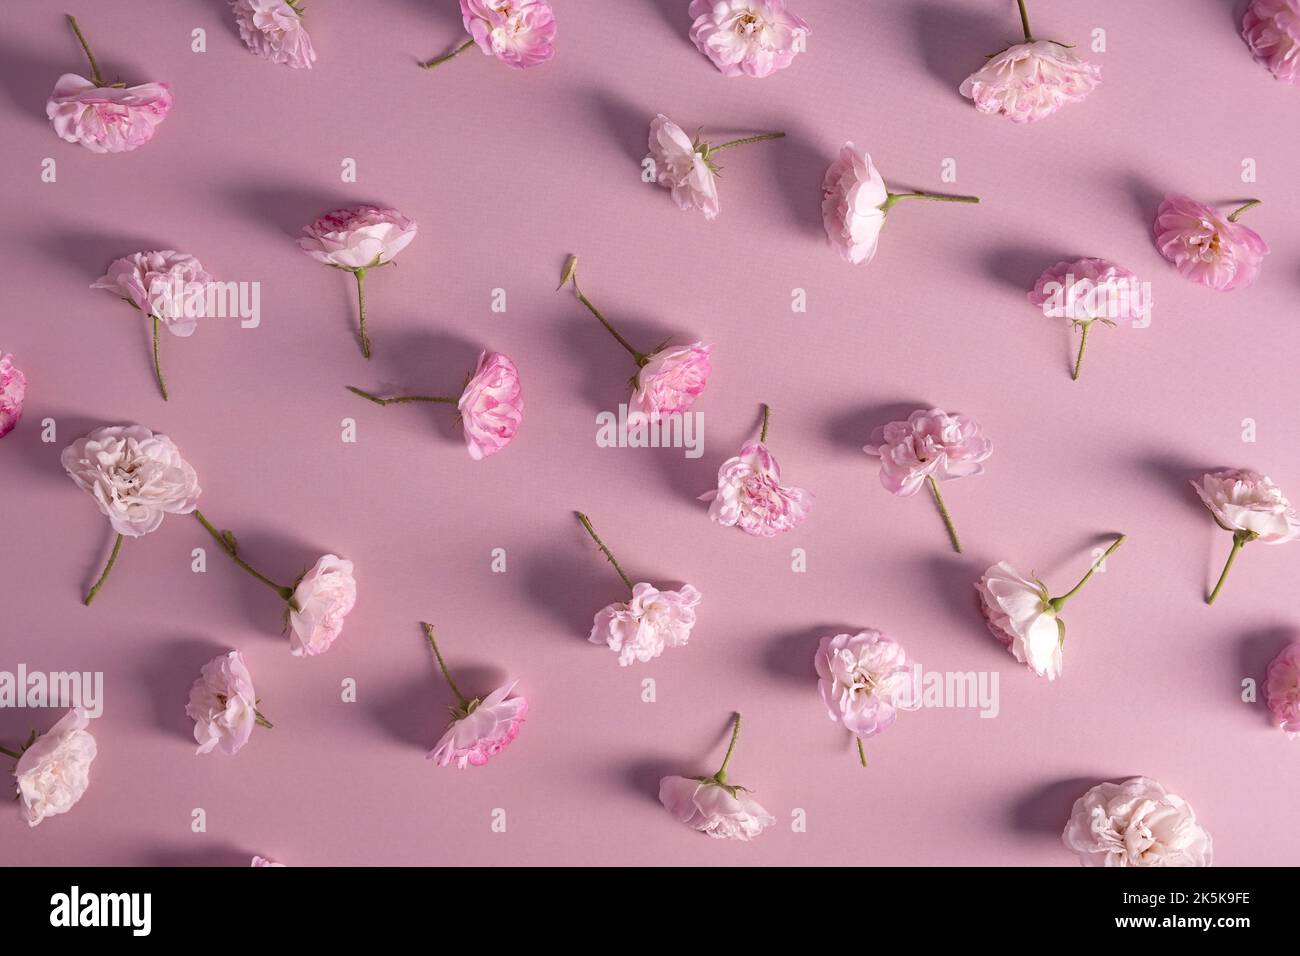 morbide rose rosa pastello su sfondo rosa. Cornice floreale di fiori in fiore rosa. Foto Stock